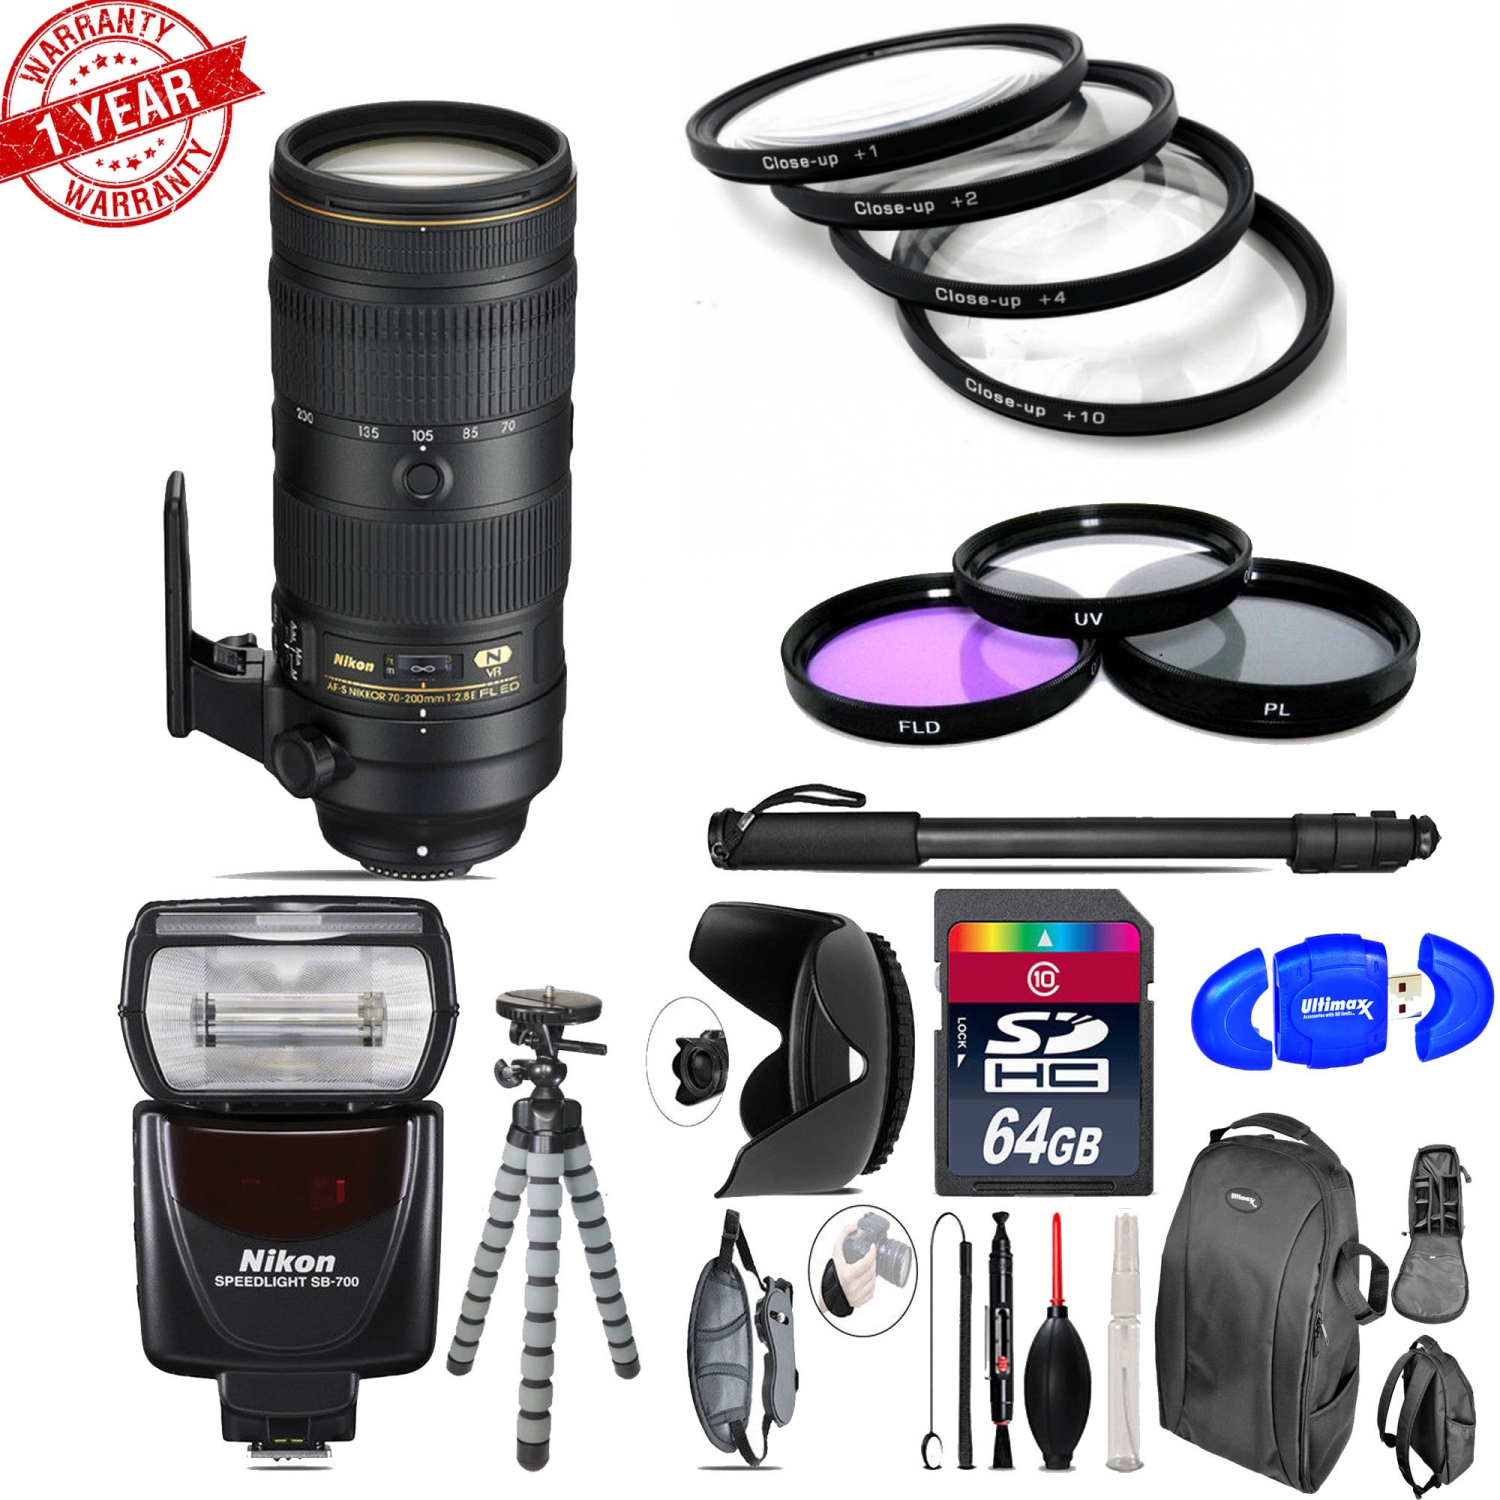 Nikon AF-S 70-200mm f/2.8E + Nikon SB-700 AF Speedlight & More - 64GB Kit - US Version w/ Seller Warranty